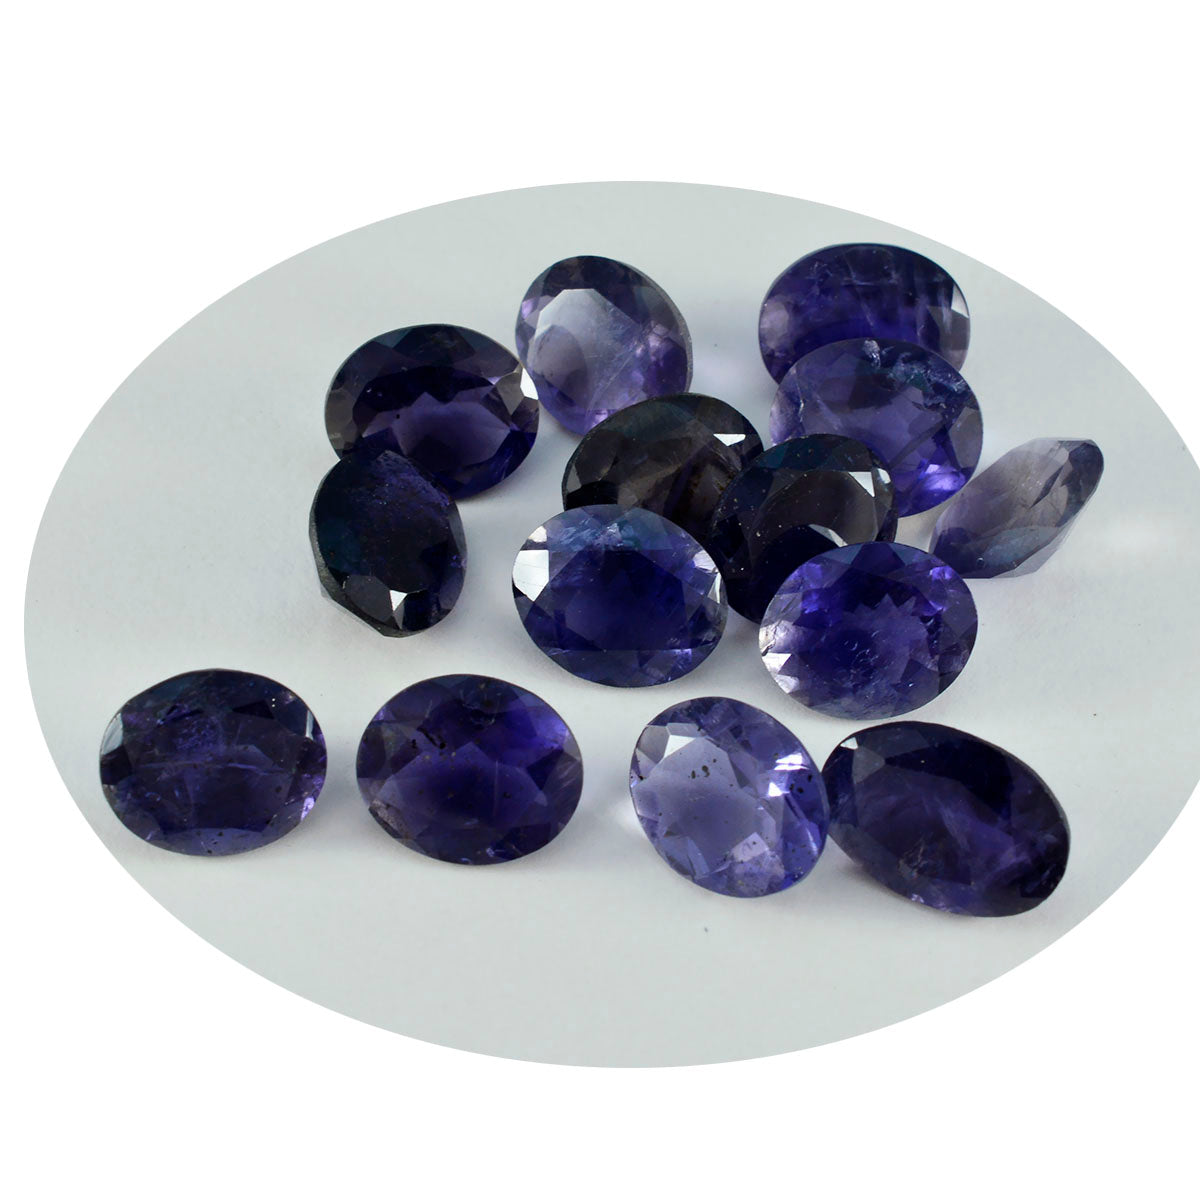 riyogems 1шт синий иолит ограненный 8x10 мм овальной формы качественный сыпучий драгоценный камень